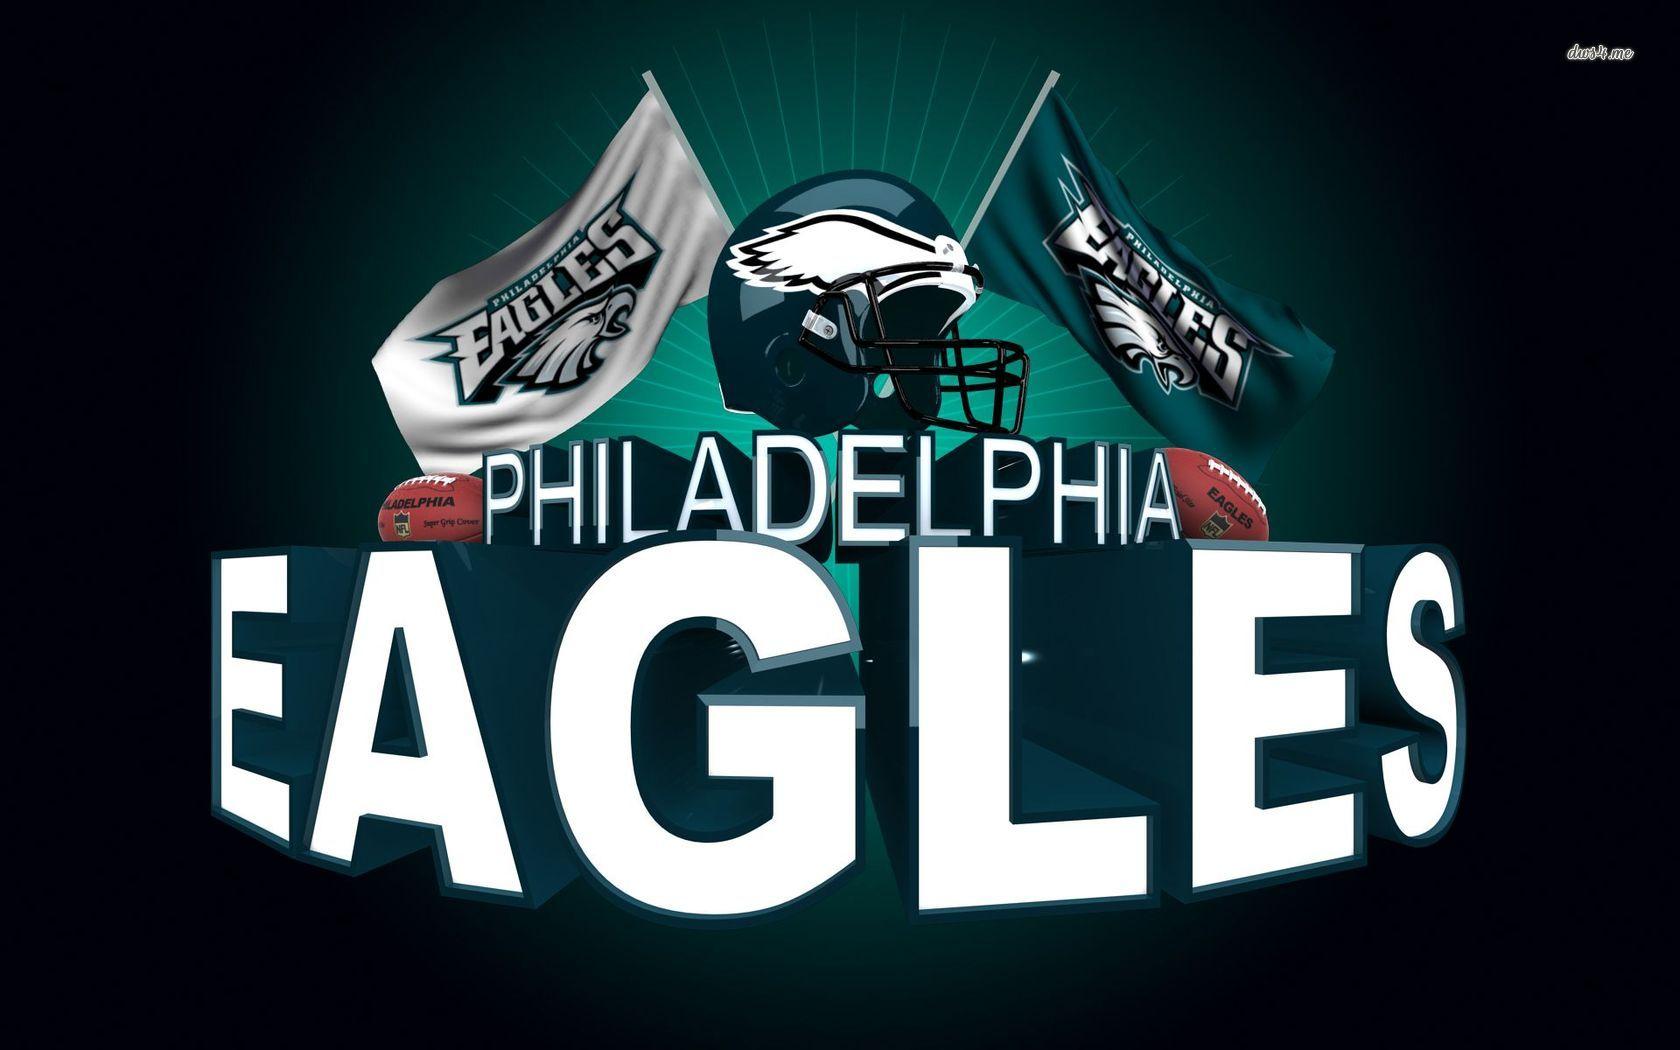 Philadelphia Eagles wallpaper wallpaper